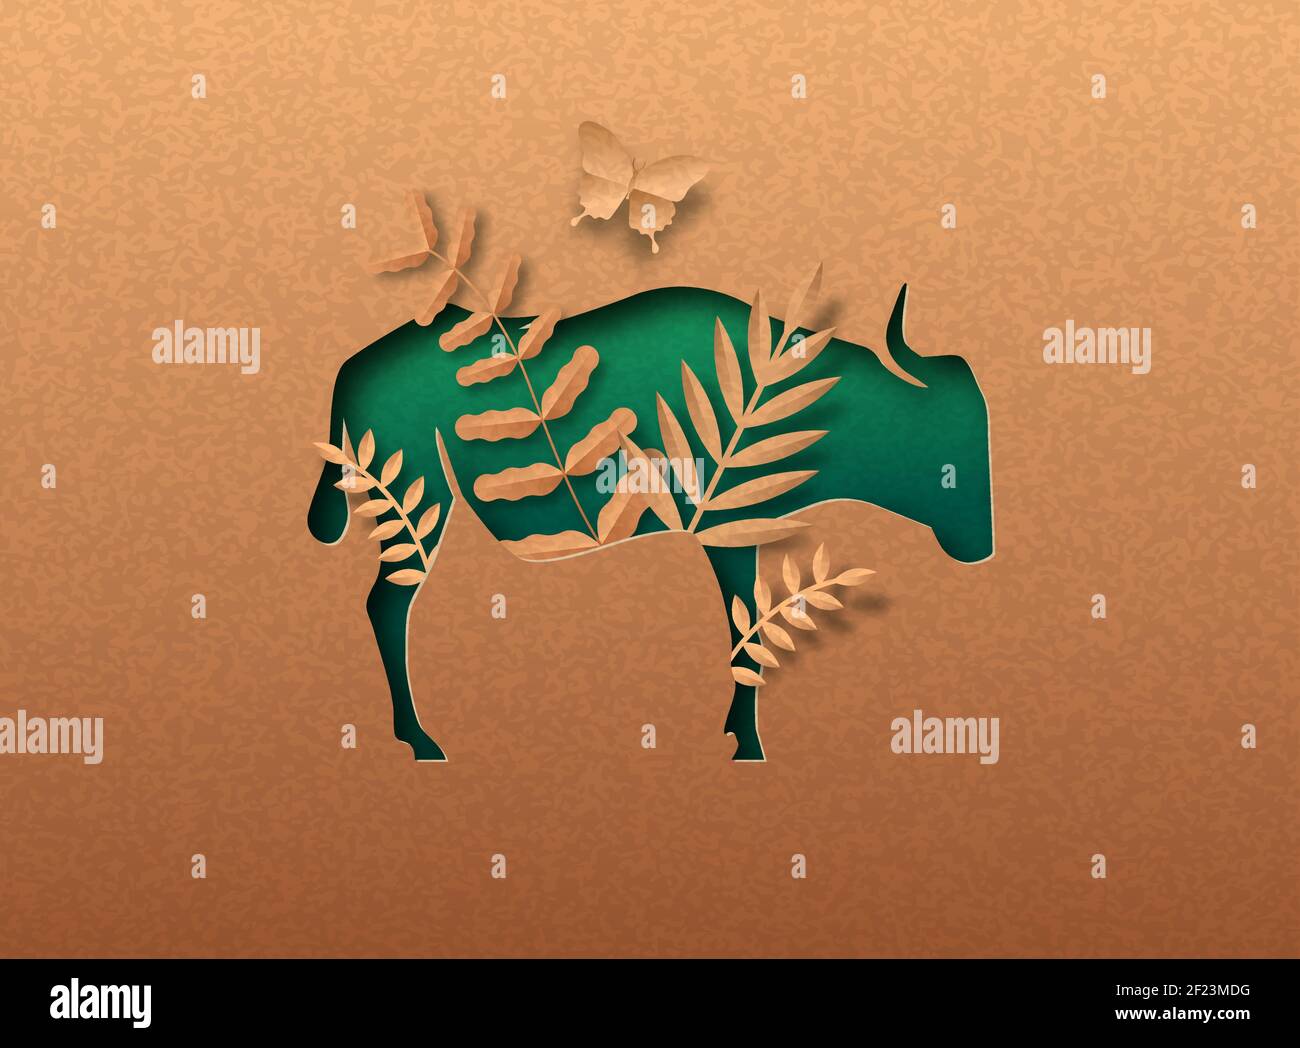 Green wildebeest animale isolato silhouette in papercut con foglia di pianta tropicale all'interno. Carta riciclata texture taglio concetto per africa safari, wildlif Illustrazione Vettoriale